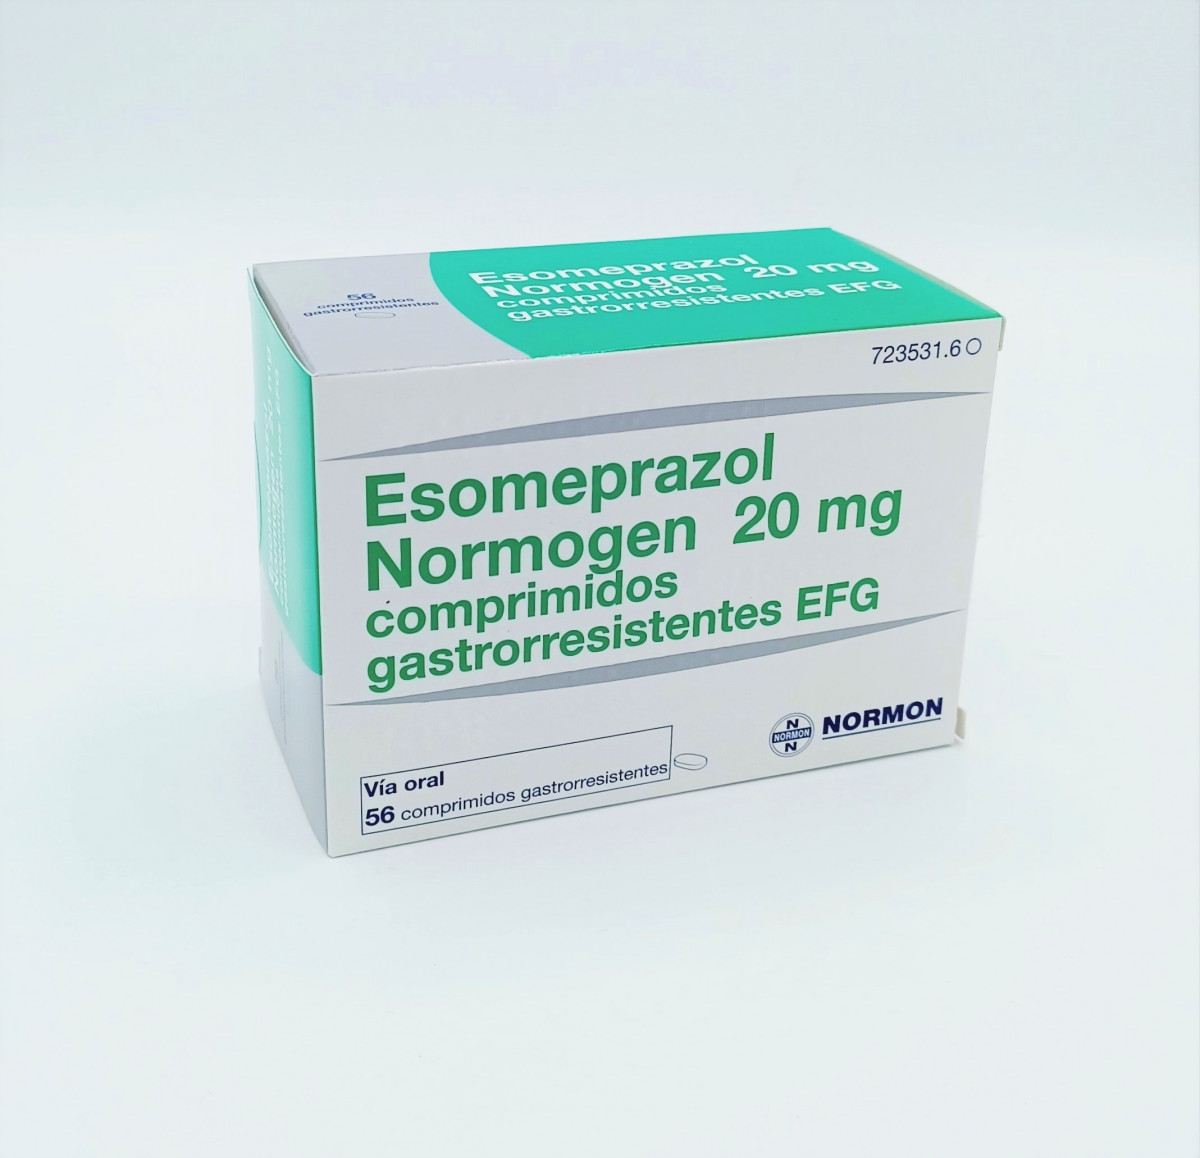 ESOMEPRAZOL NORMOGEN 20 MG COMPRIMIDOS GASTRORRESISTENTES EFG 56 comprimidos (Blister PVC/PVDC-Al) fotografía del envase.